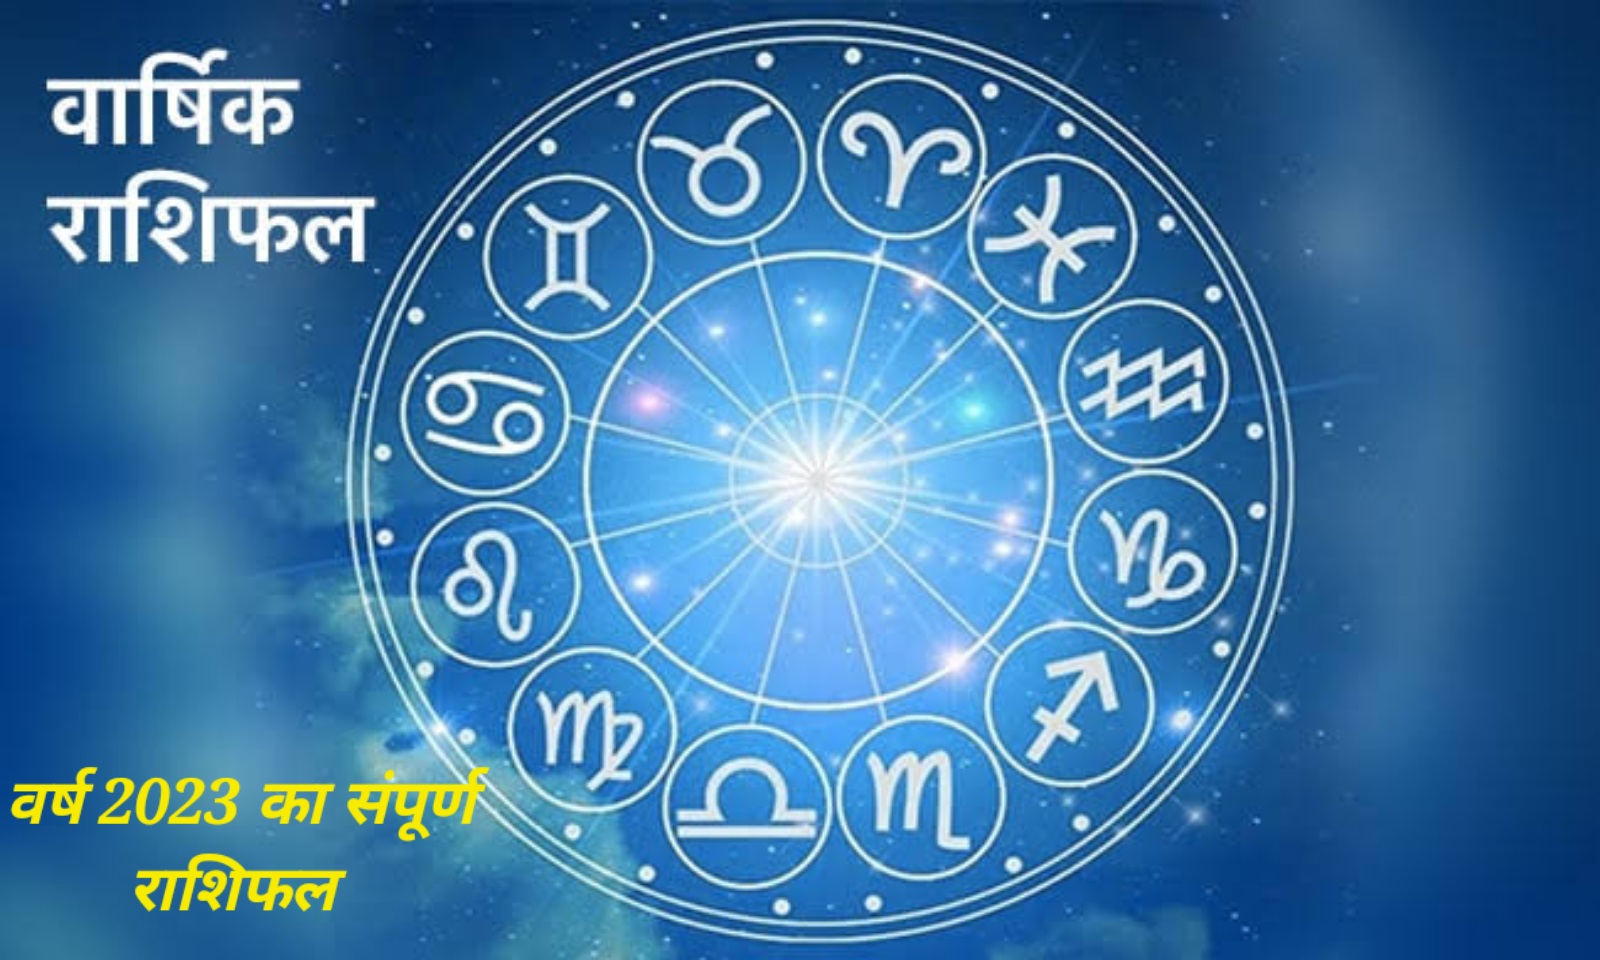 Horoscope 2023: जानें कैसा रहेगा आपका वर्ष 2023 के हर एक महीने का संपूर्ण वार्षिक राशिफल!